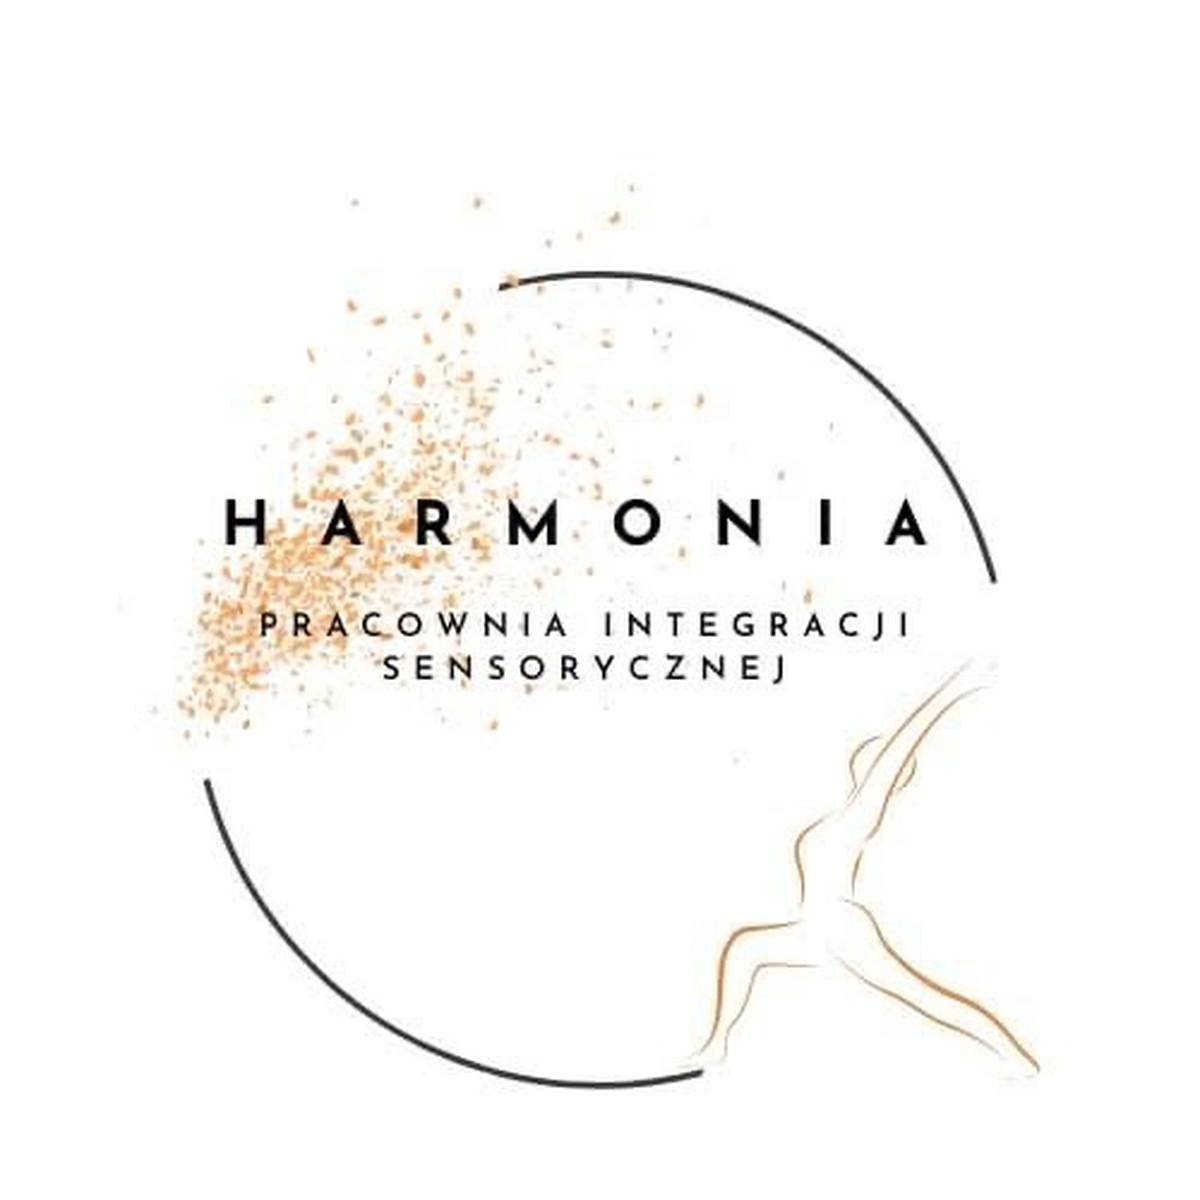 Harmonia - Pracownia Integracji Sensorycznej w Andrychowie. Darmowe konsultacje na otwarcie